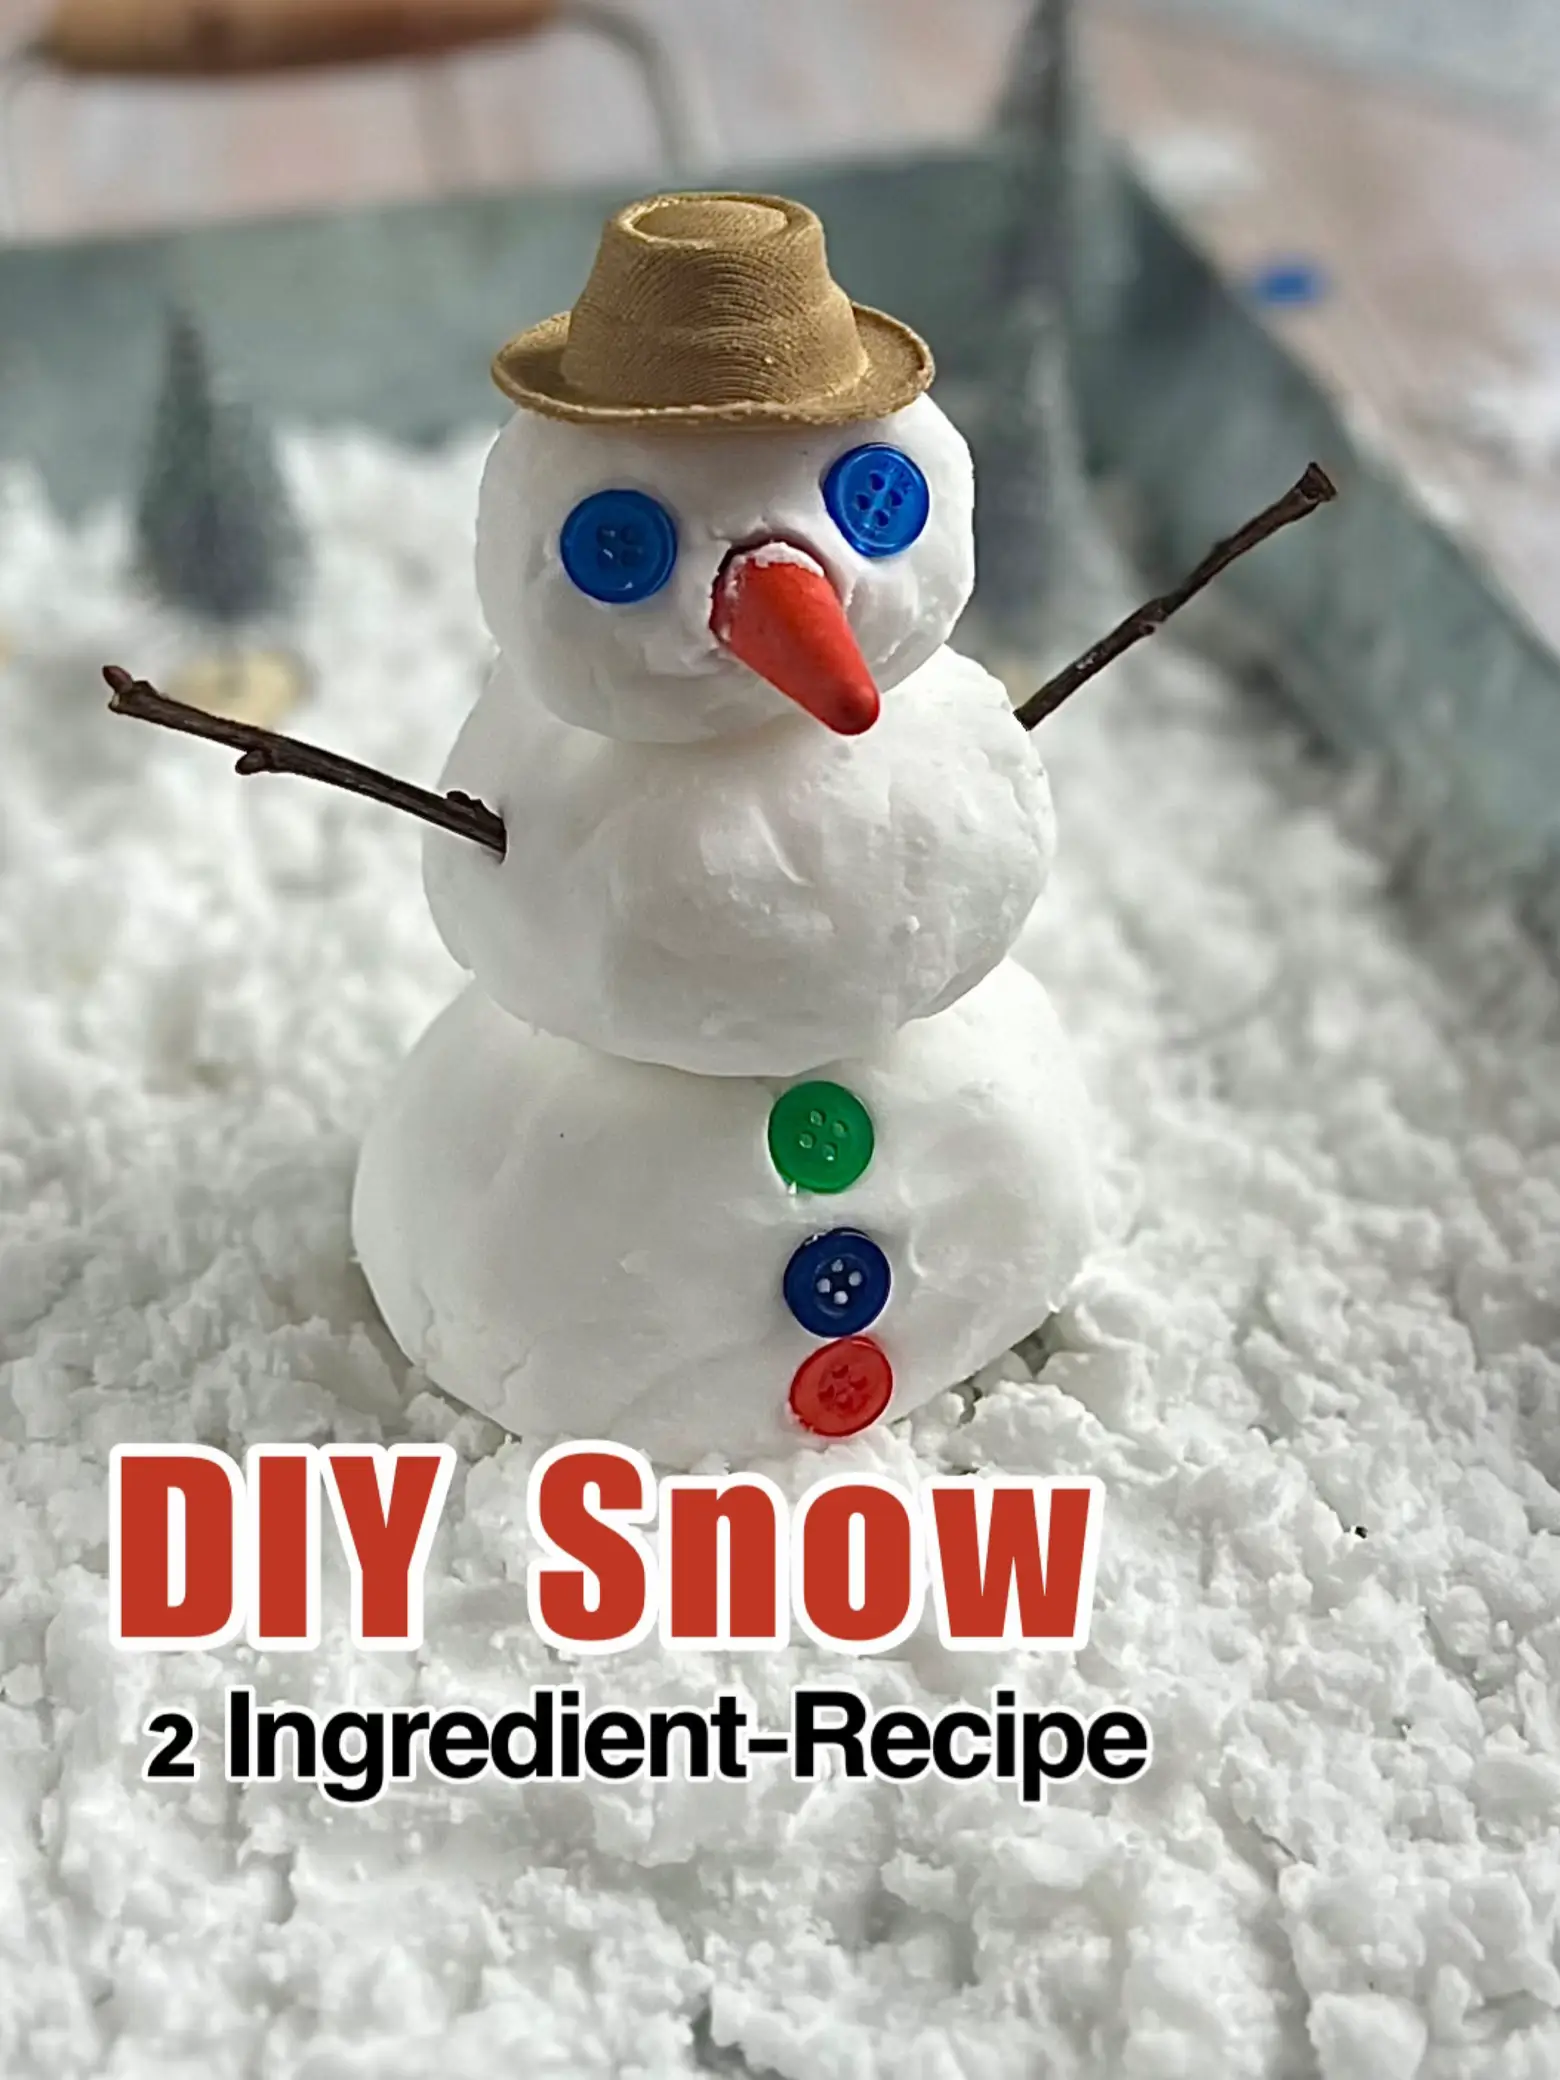 How to Make Fake Snow - Non-Toxic Artificial Snow Recipes